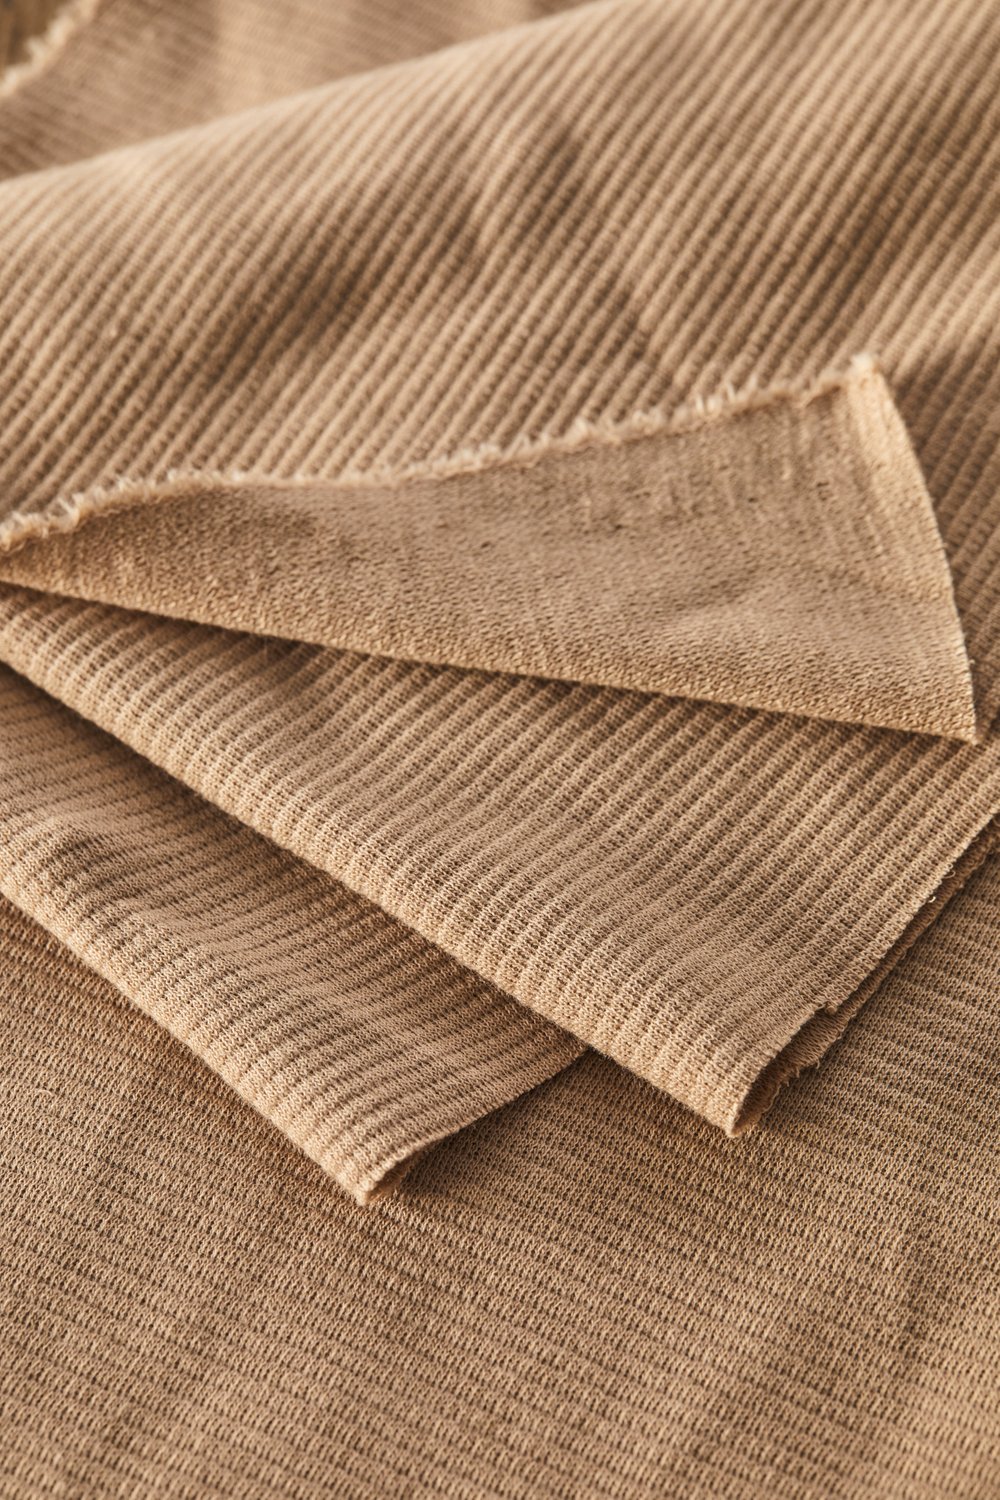 woolen-ottoman-02 dune